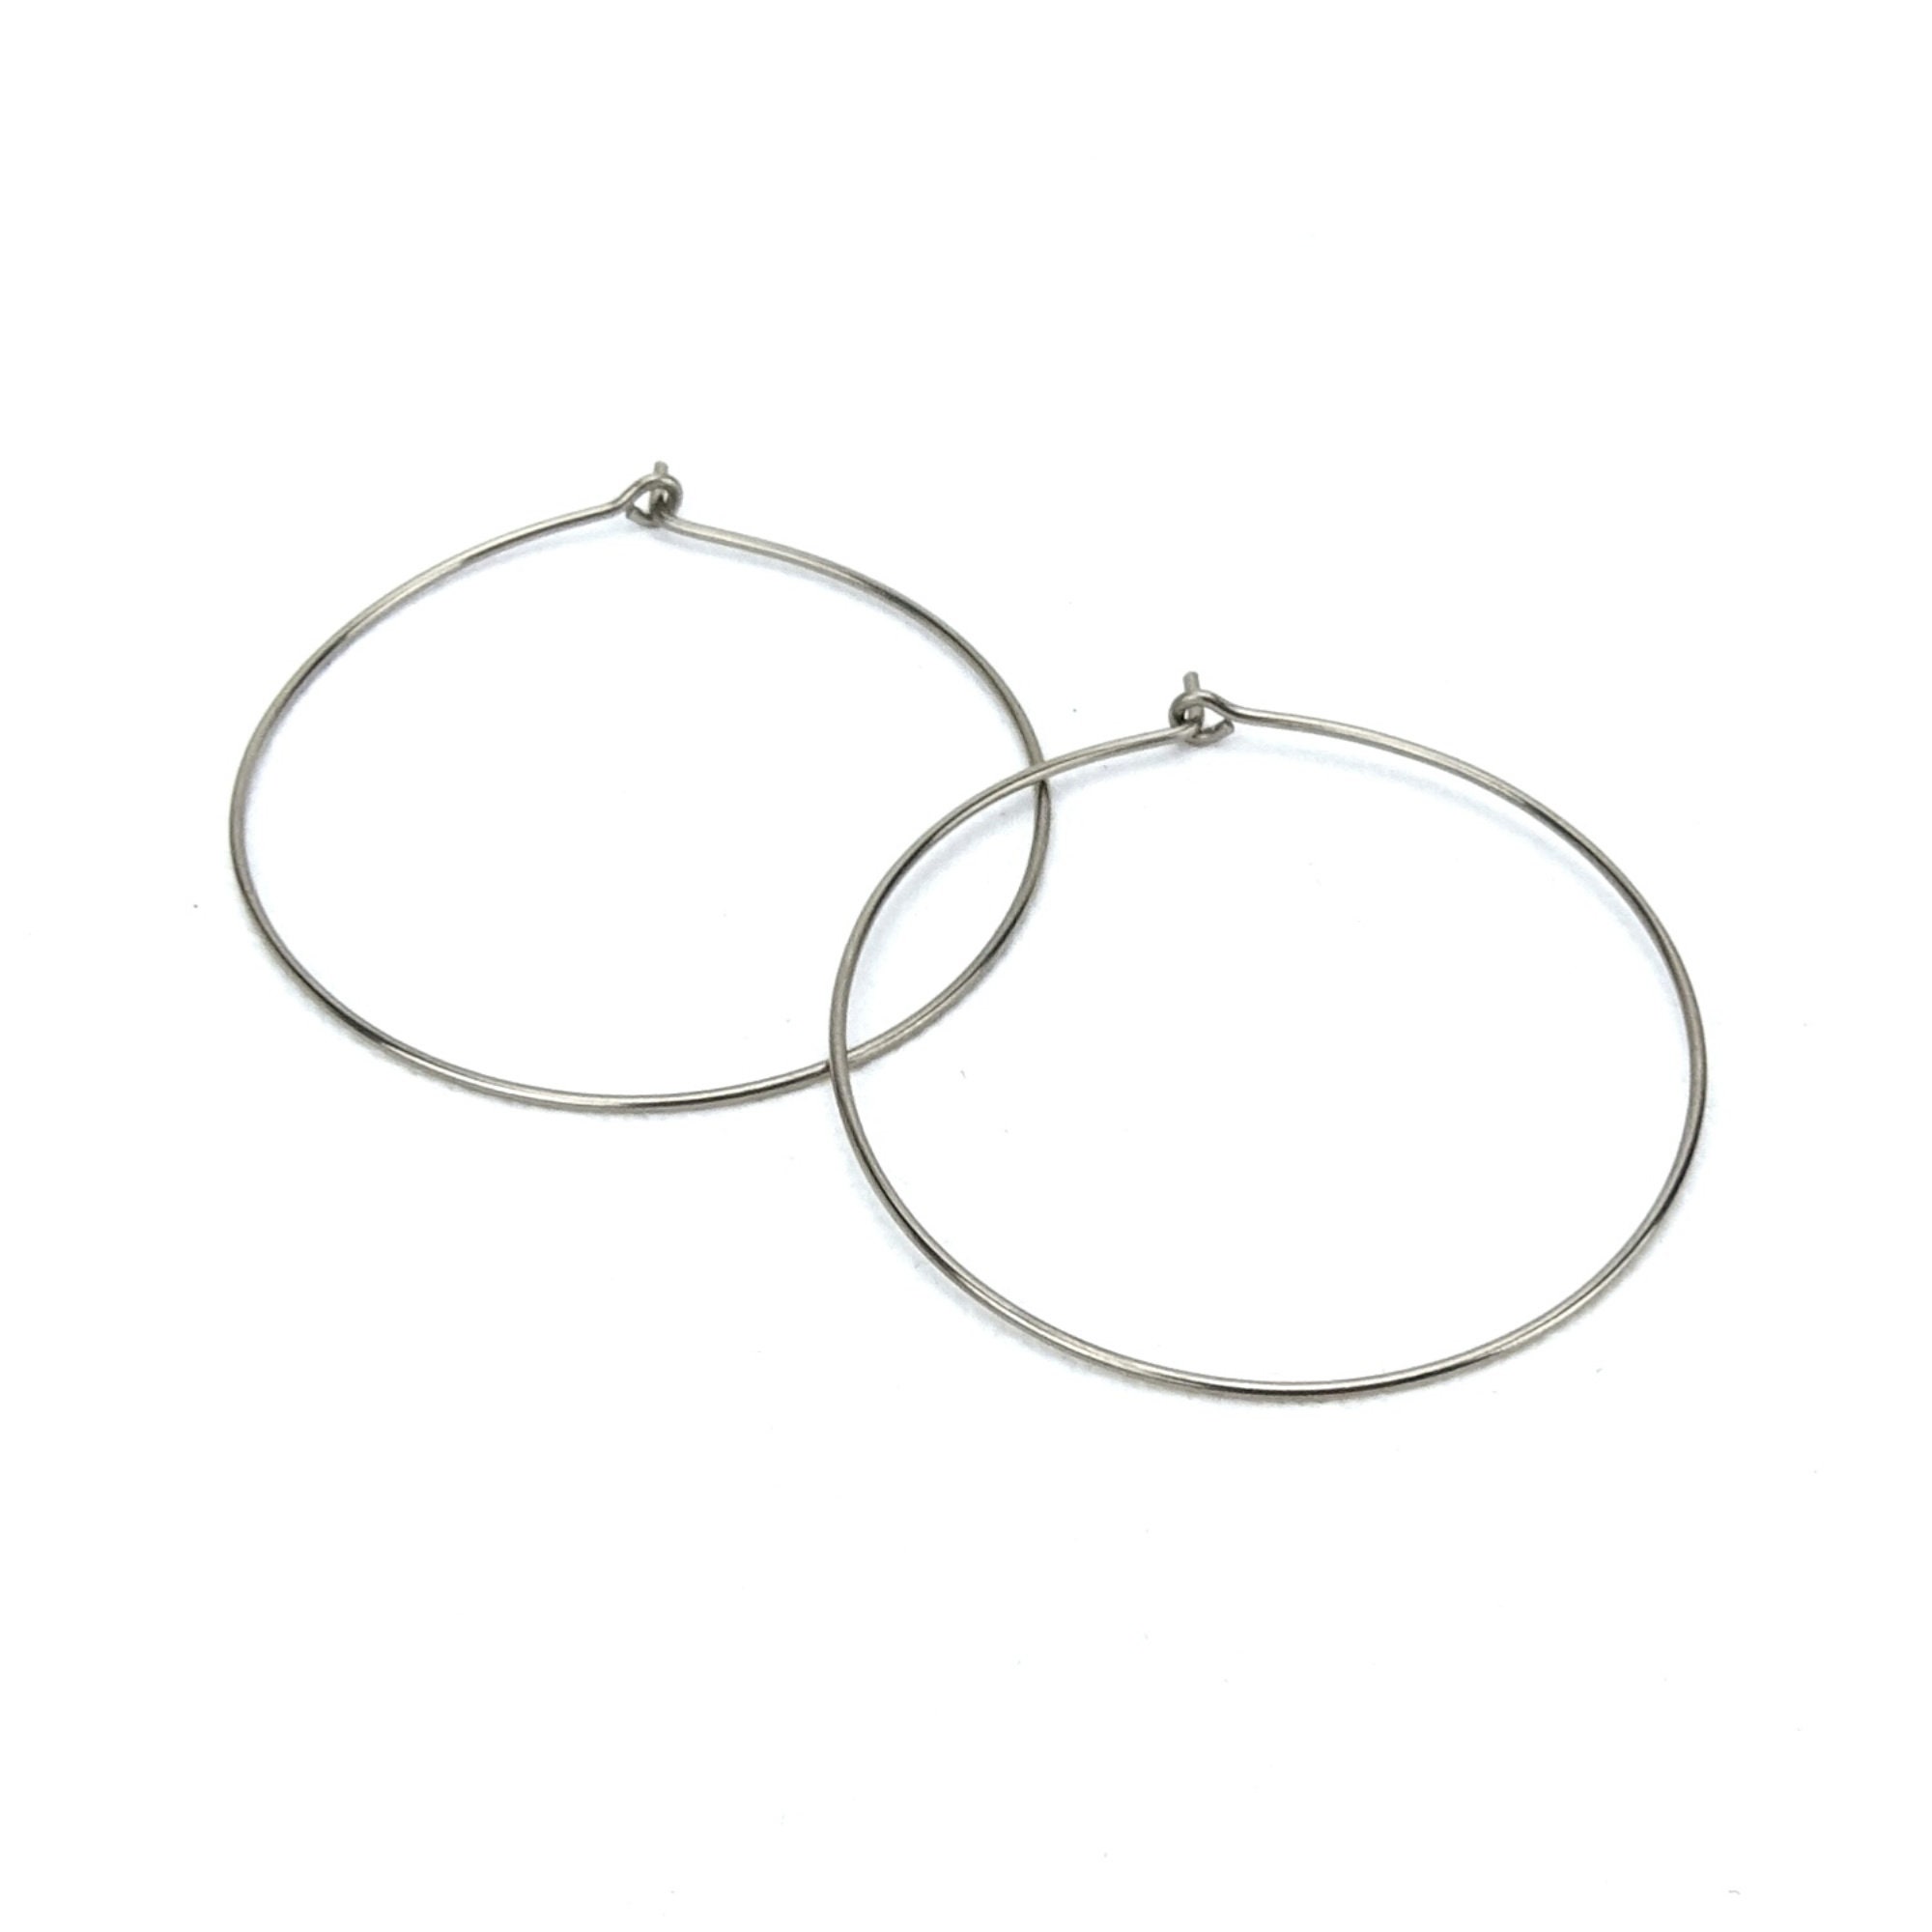 Pure Titanium Earrings / Hypoallergenic Hoop Earrings / Allergy Free Earrings Hoops - Small Double Silver Plated Hoop Dangle Titanium